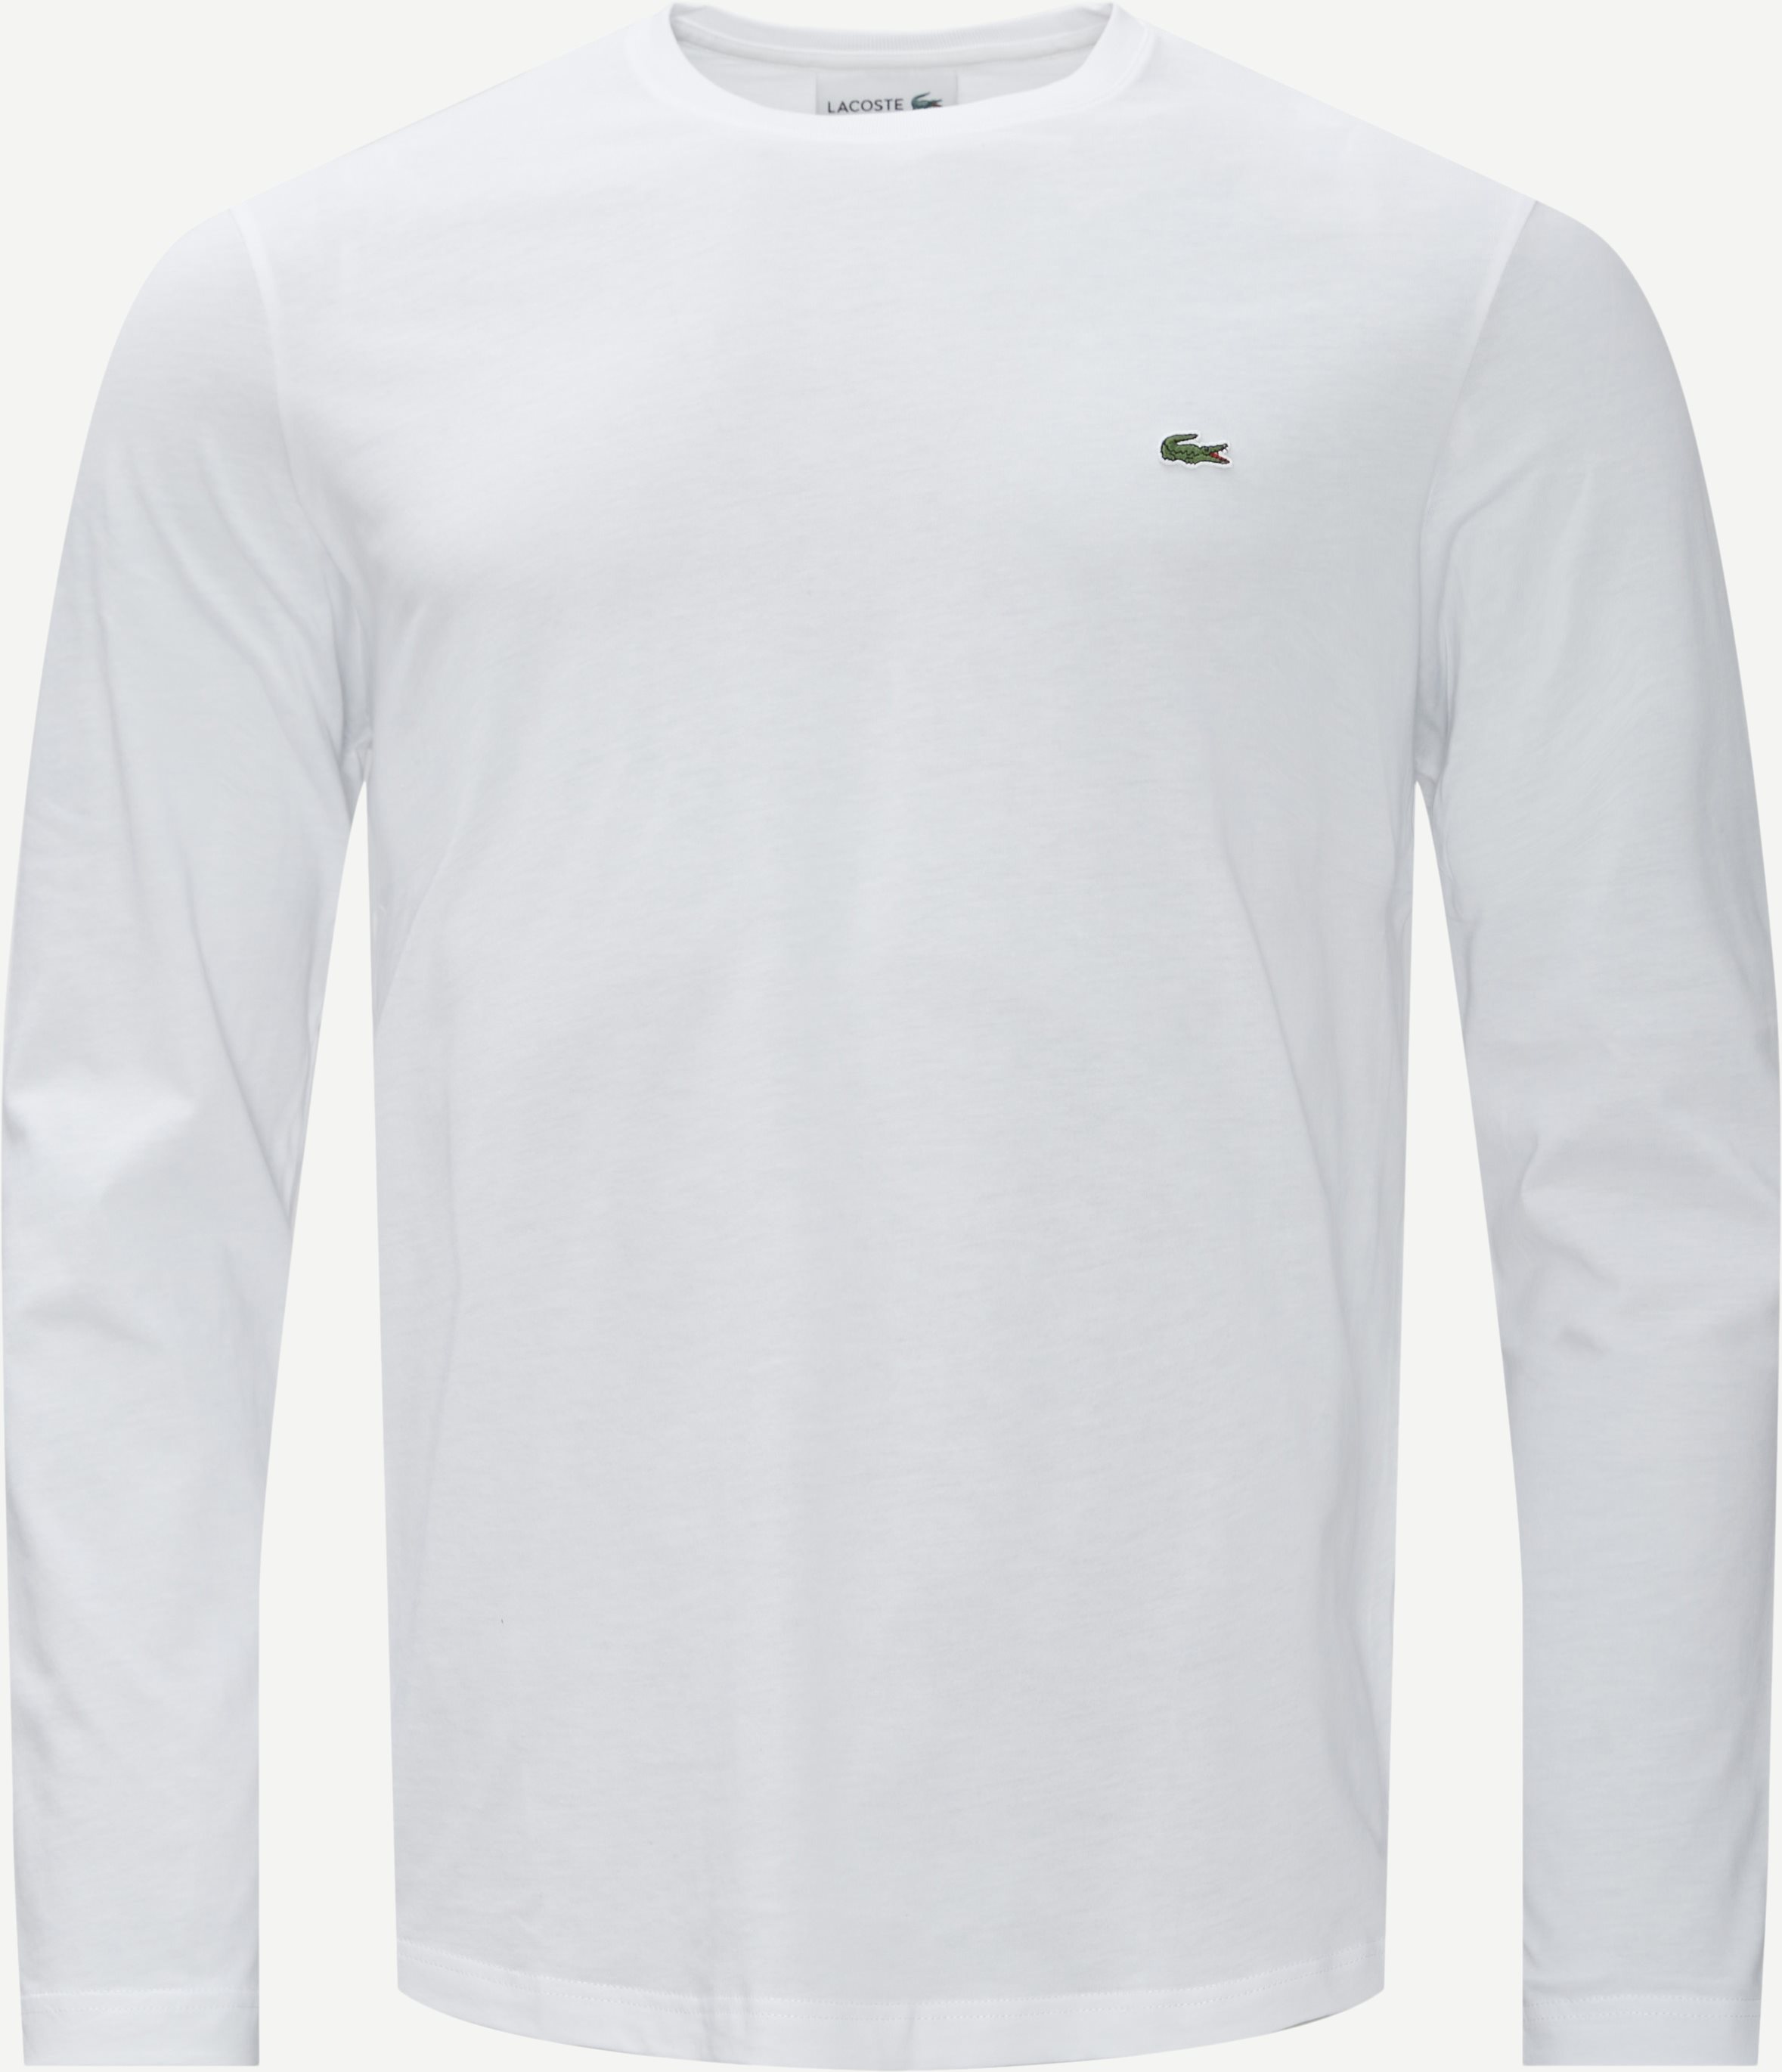 Rundhalsausschnitt mit langen Ärmeln - T-Shirts - Regular fit - Weiß